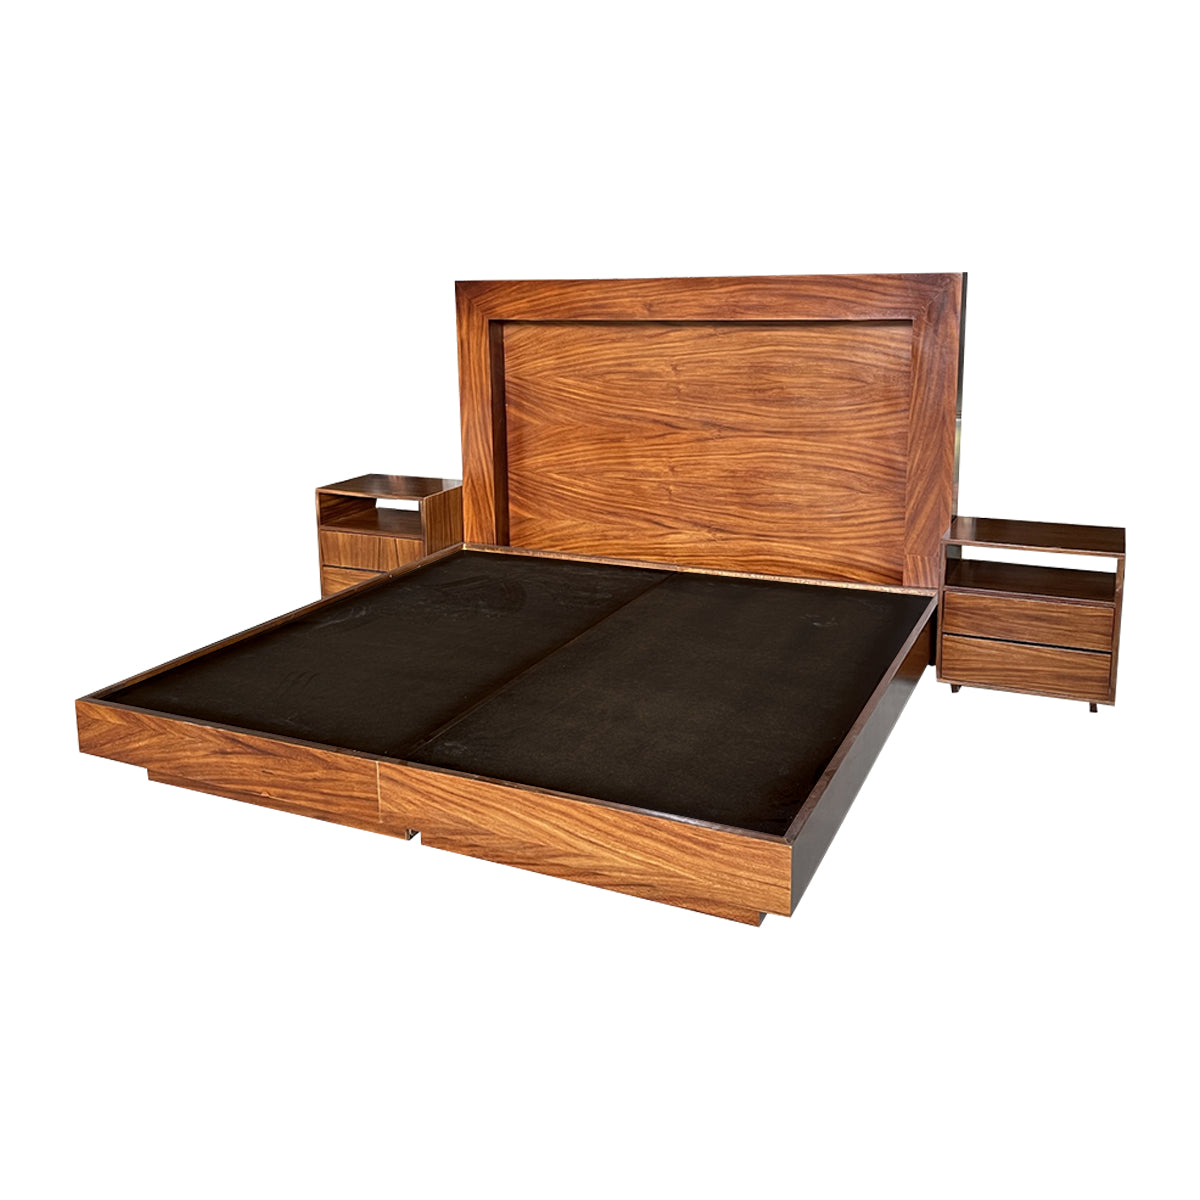 Bases de cama - Wooden Box